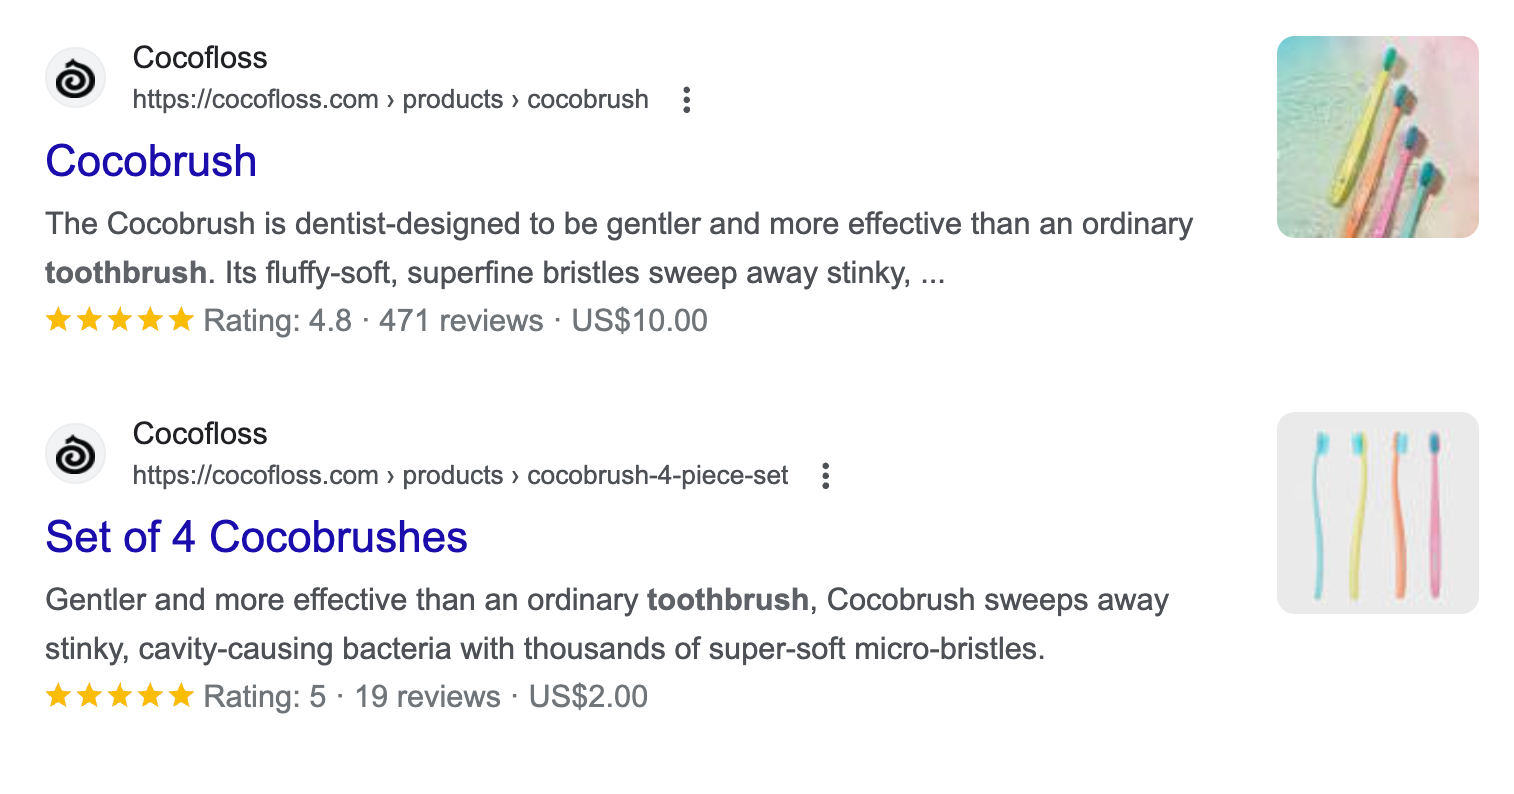 Dos SERP de Google de la marca Cocofloss